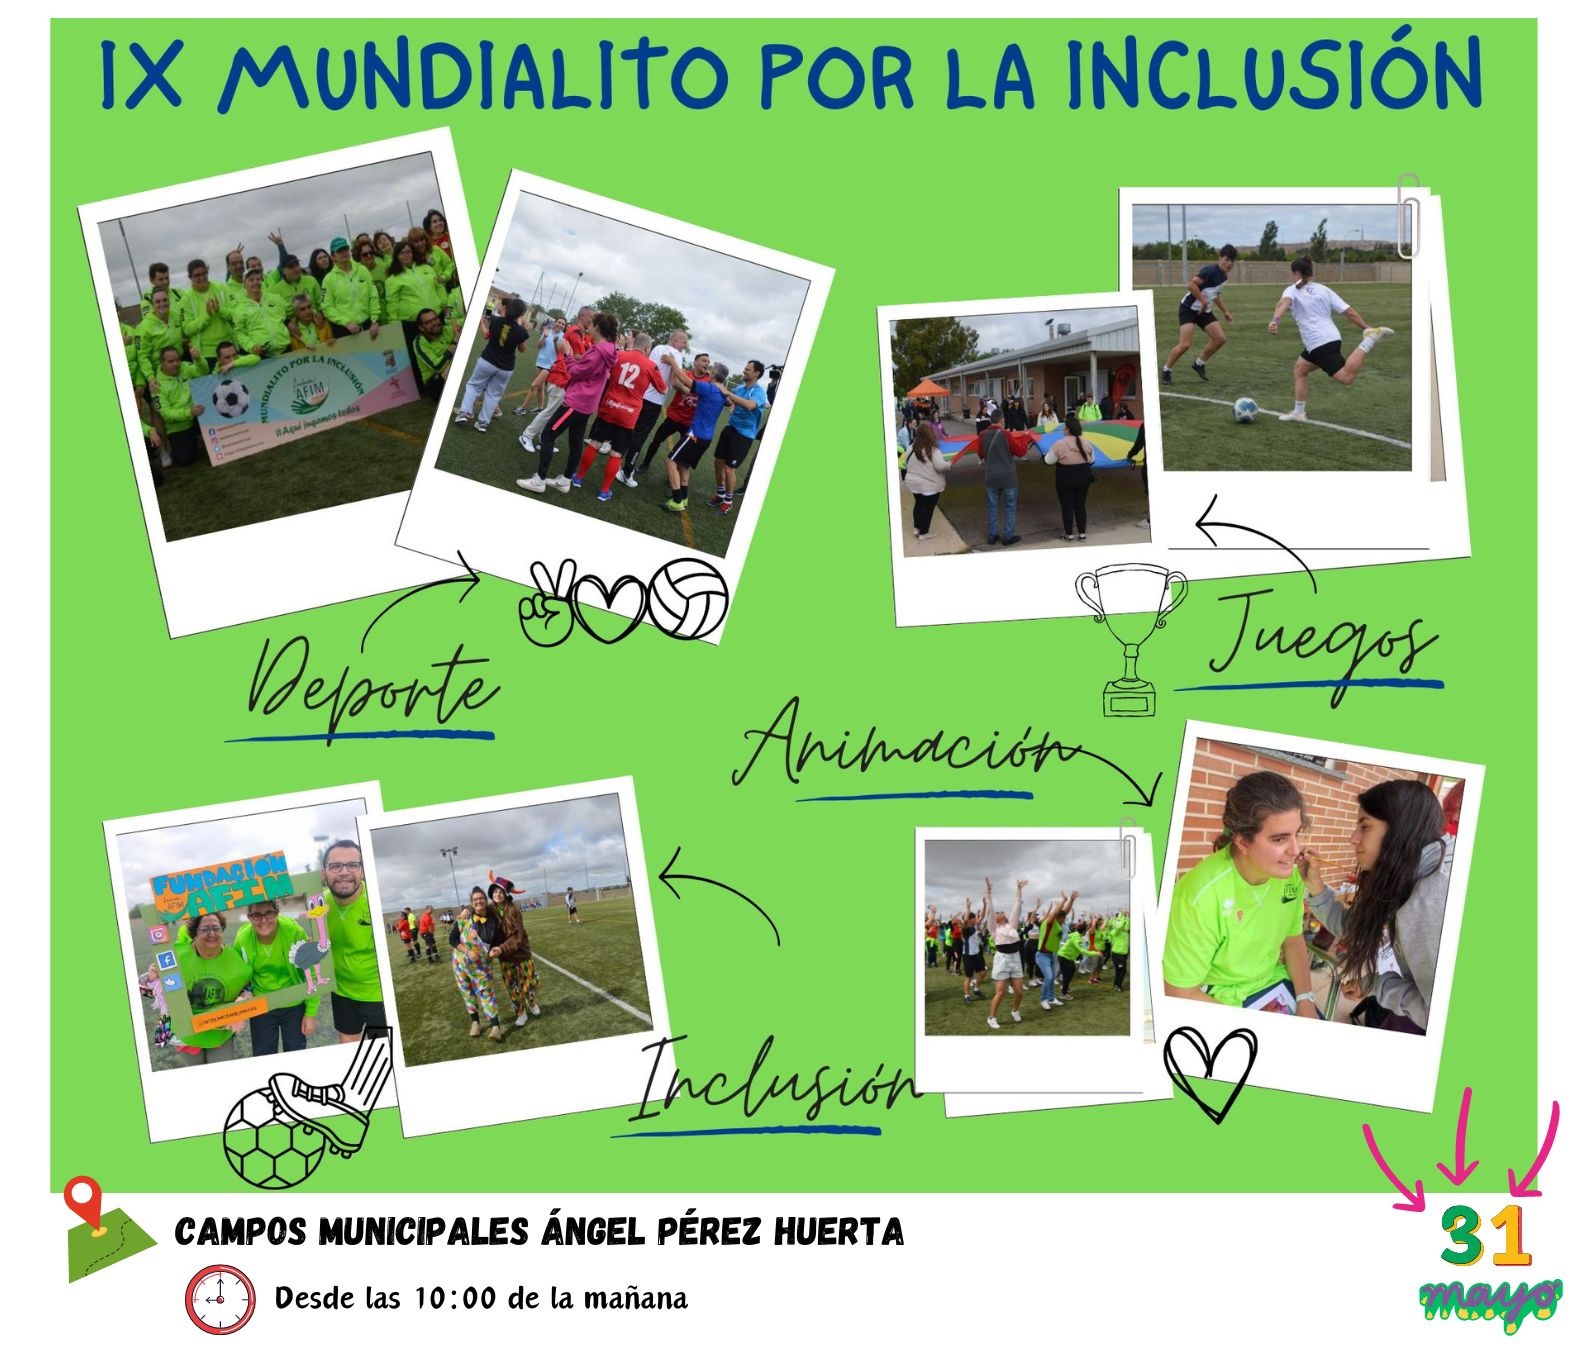 IX mundialito para la inclusión